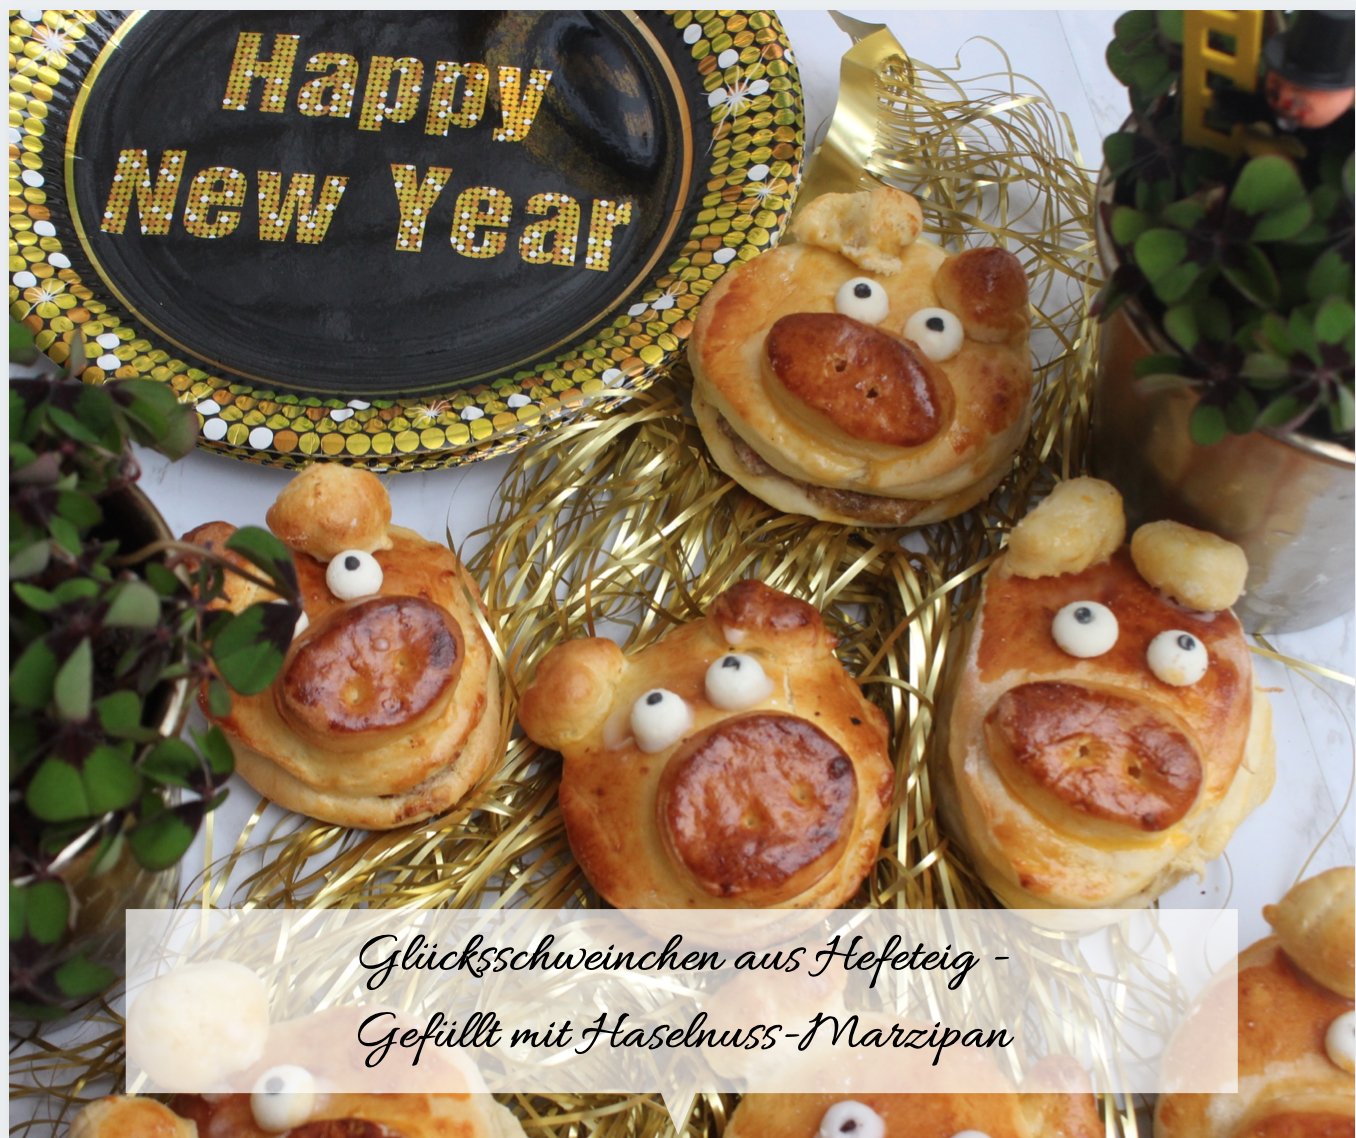 Glücksschweinchen aus hefeteig - gefüllt mit haselnuss-marzipan